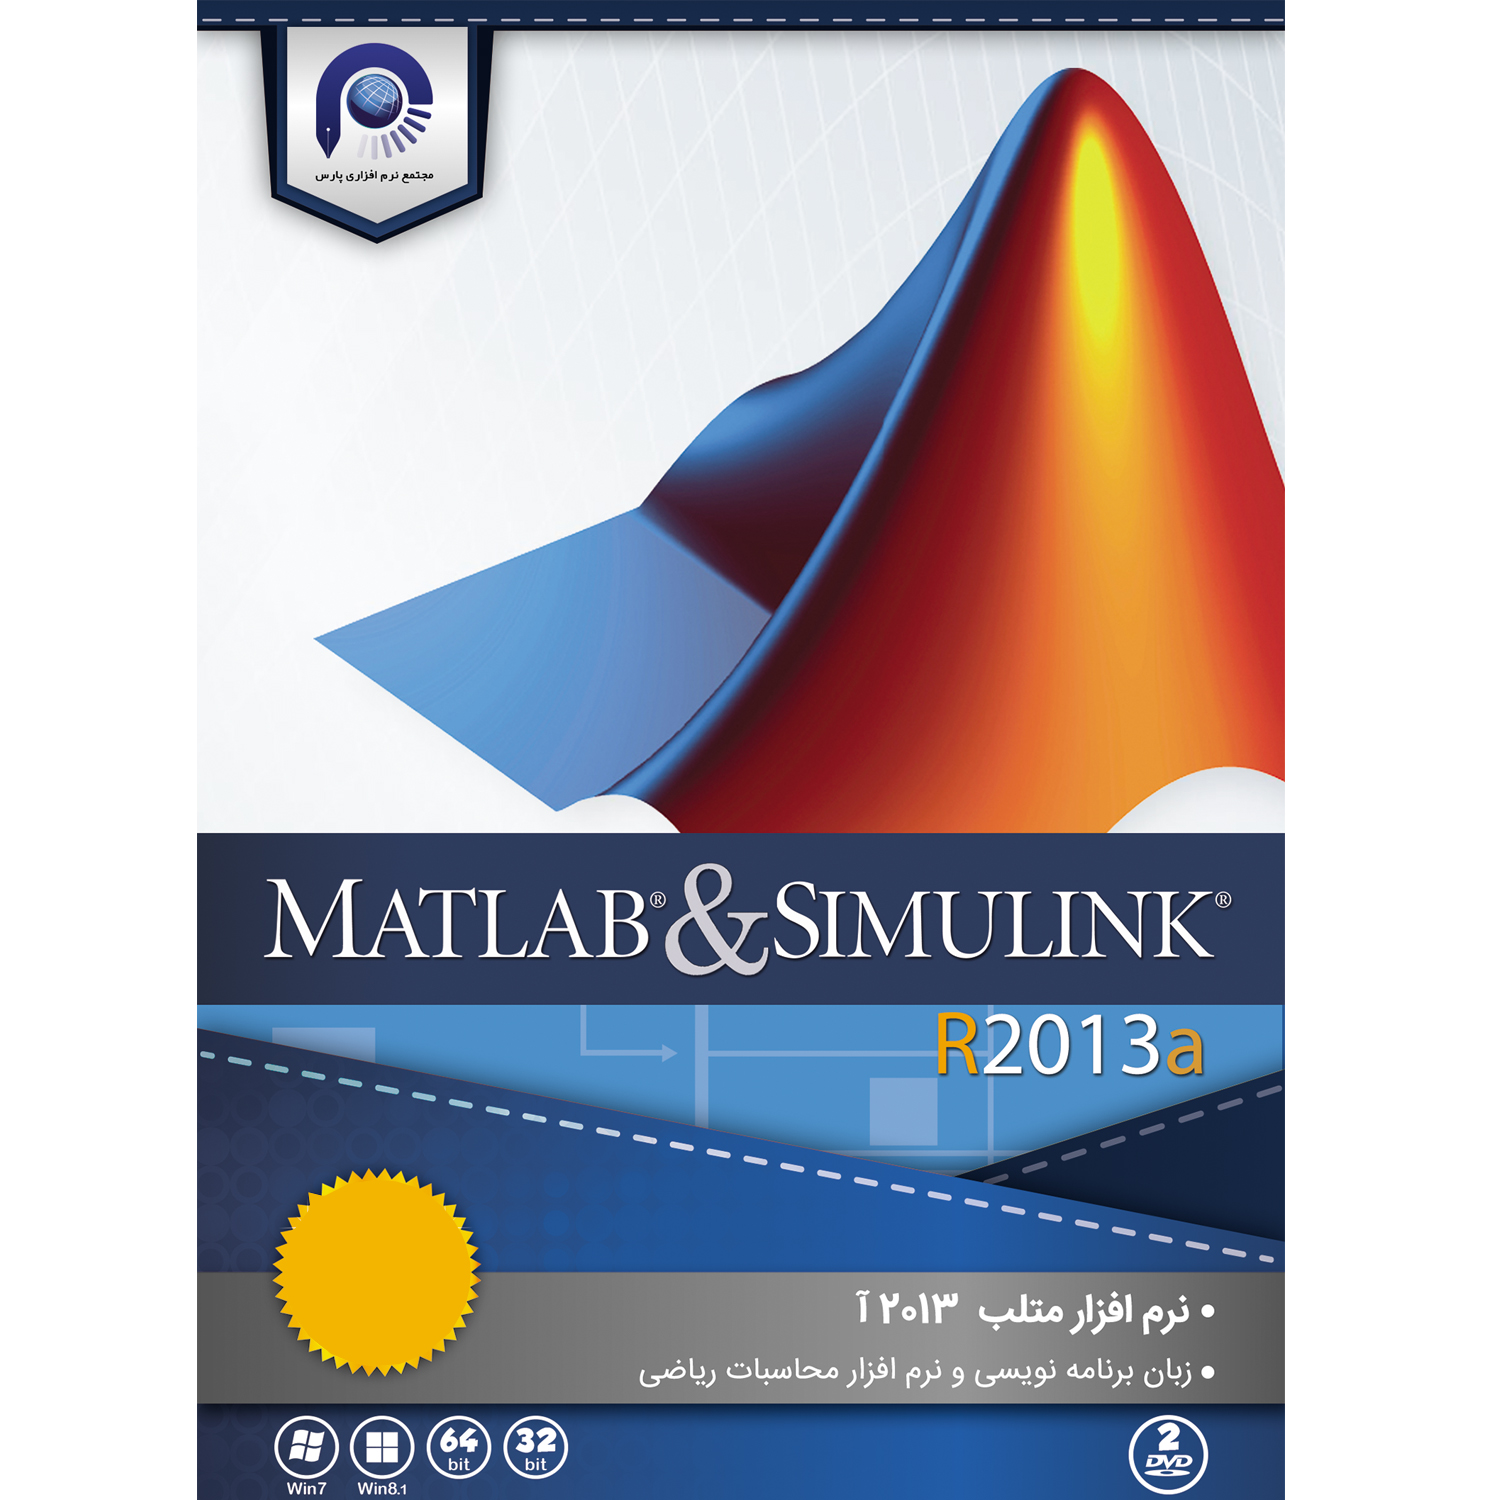  مجموعه نرم افزاری MATLAB & SIMULINK R2013a 32&64bit نشر مجتمع نرم افزاری پارس